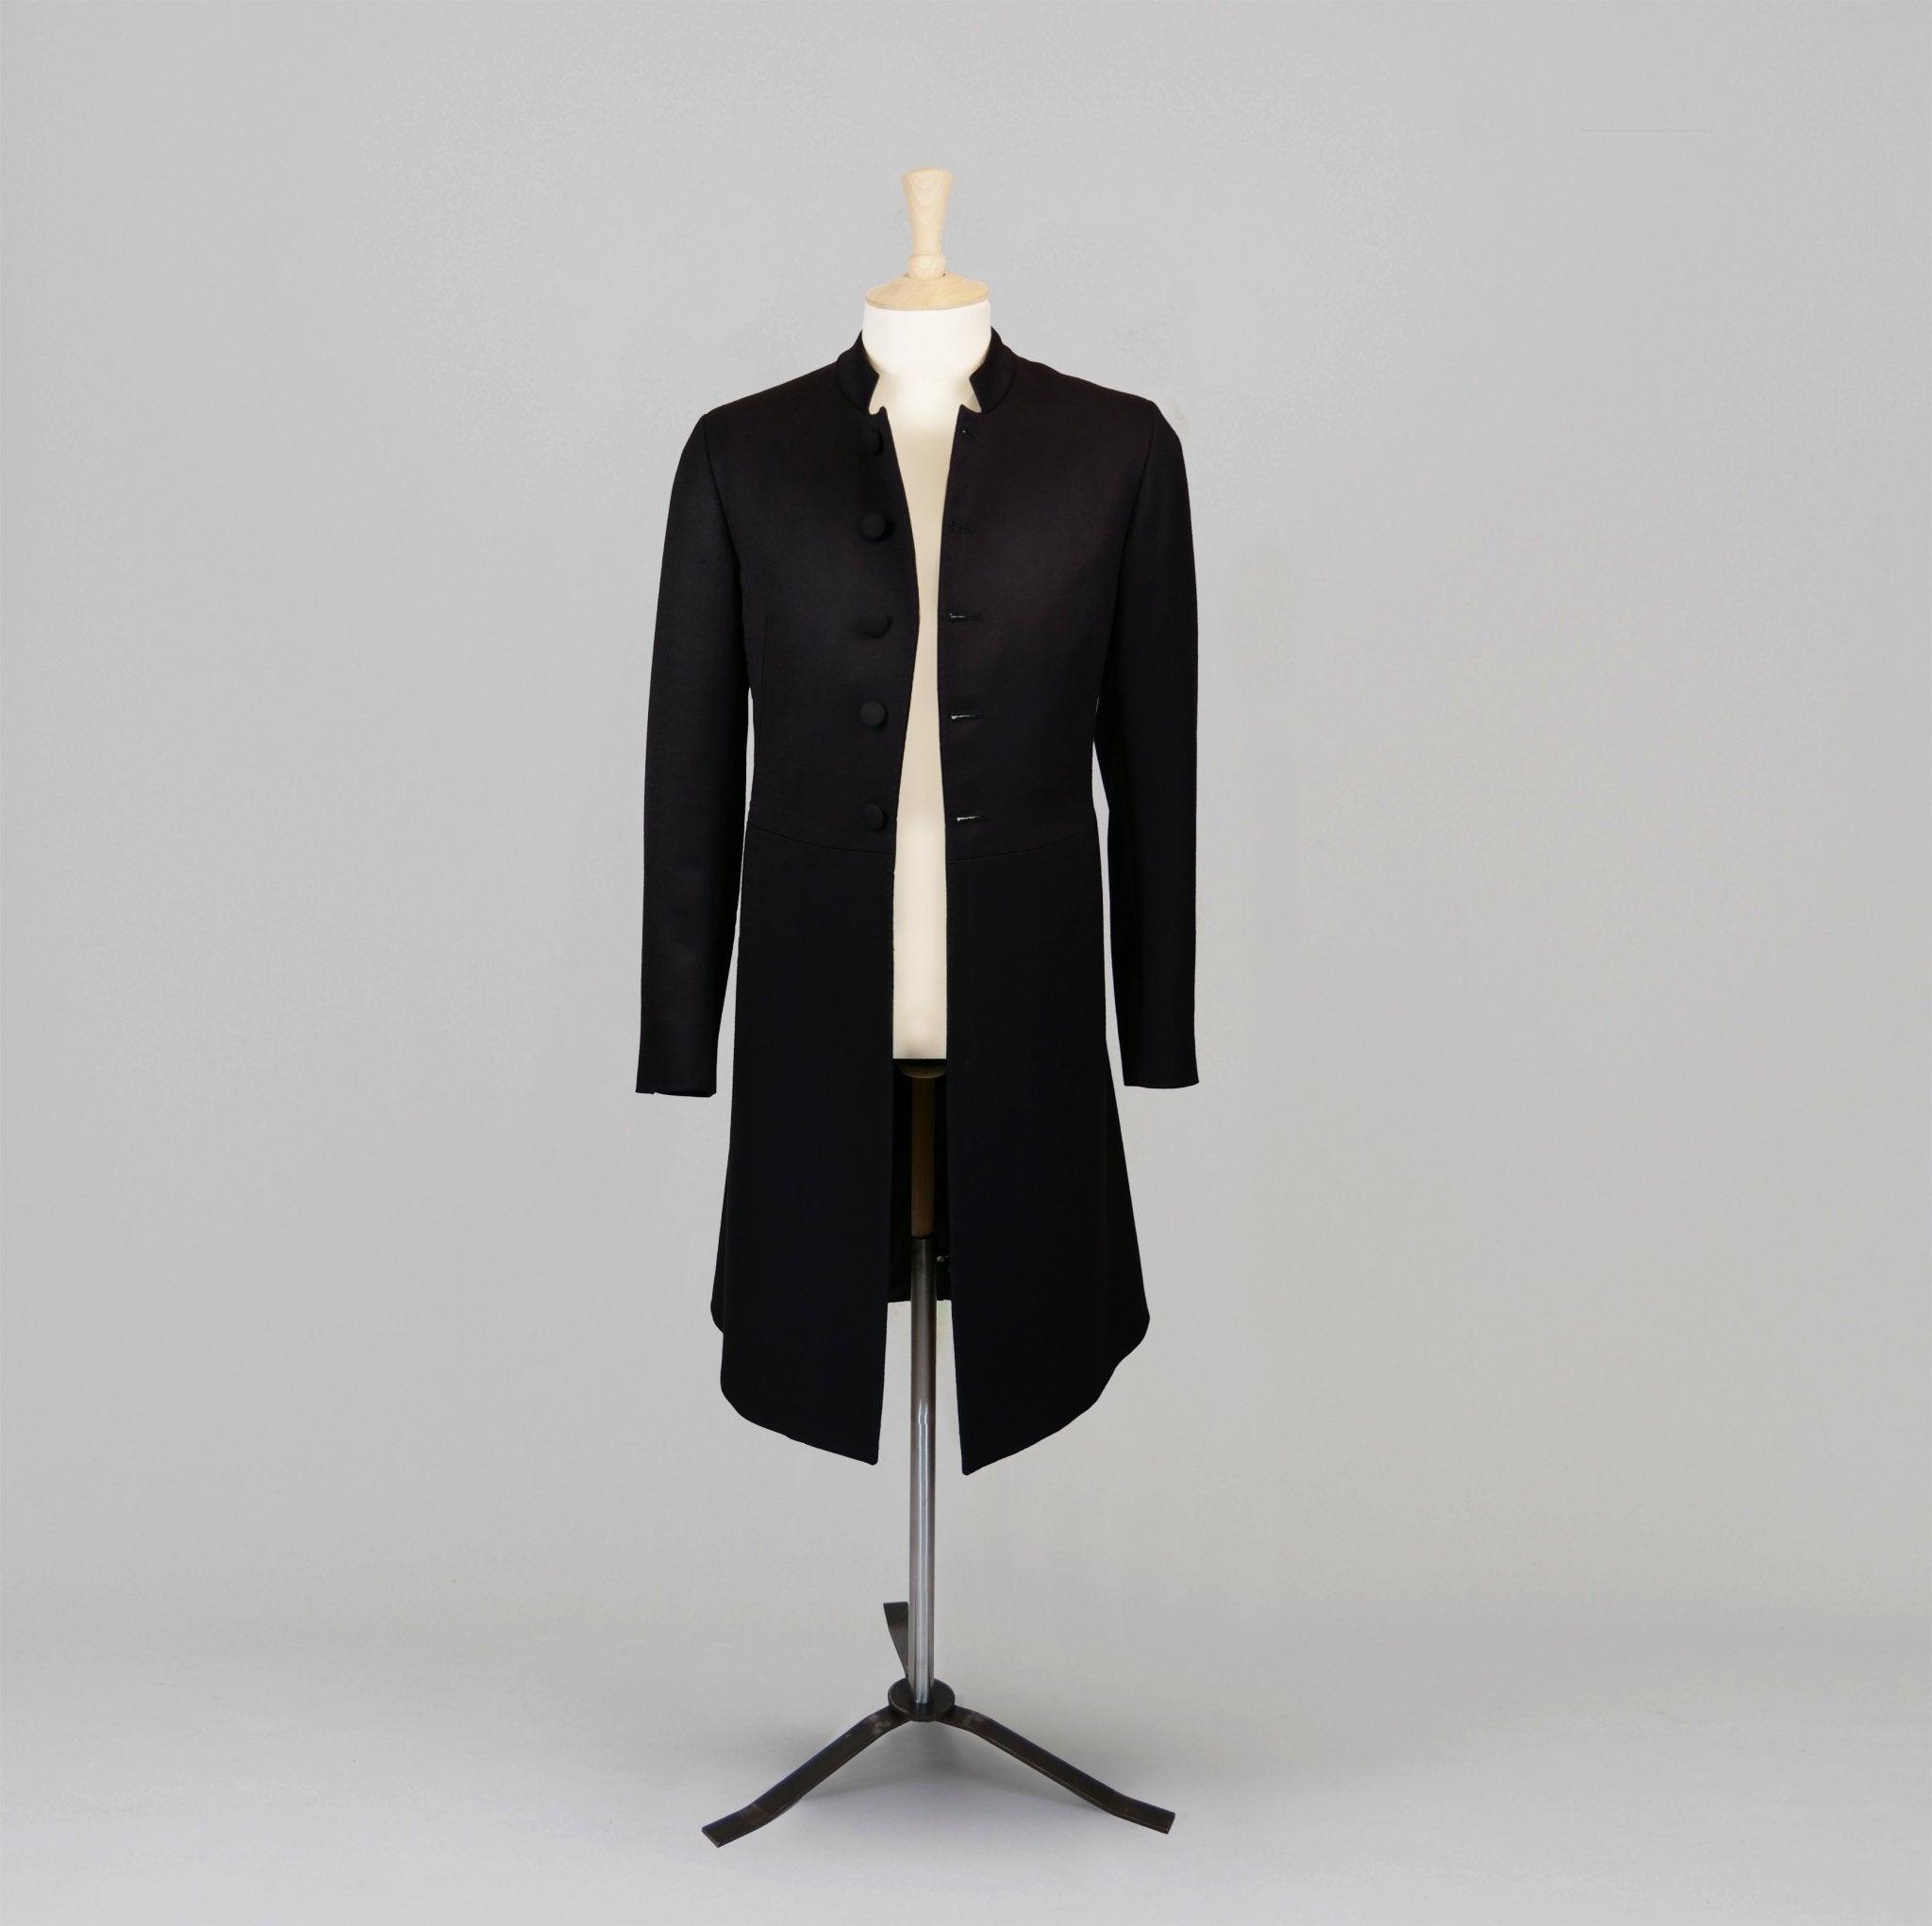 Zara | Jackets & Coats | Zara Nwt Double Breasted Frock Coat | Poshmark